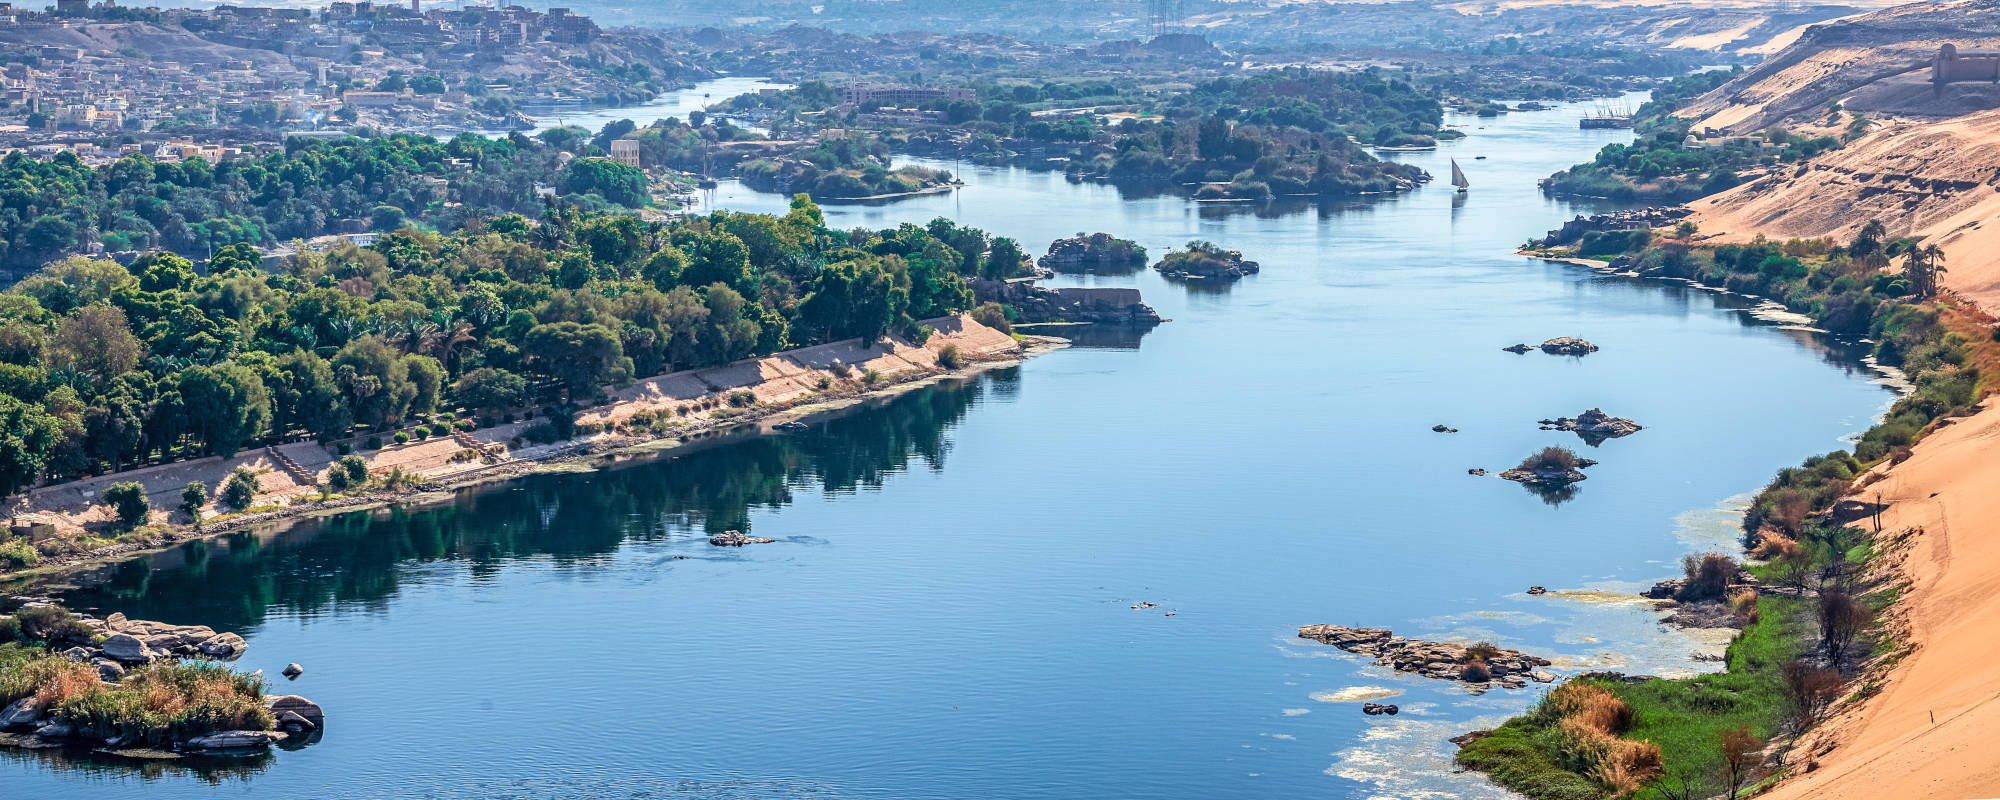 Ägypten - Ausblick auf Nil mit Landschaft und Boot